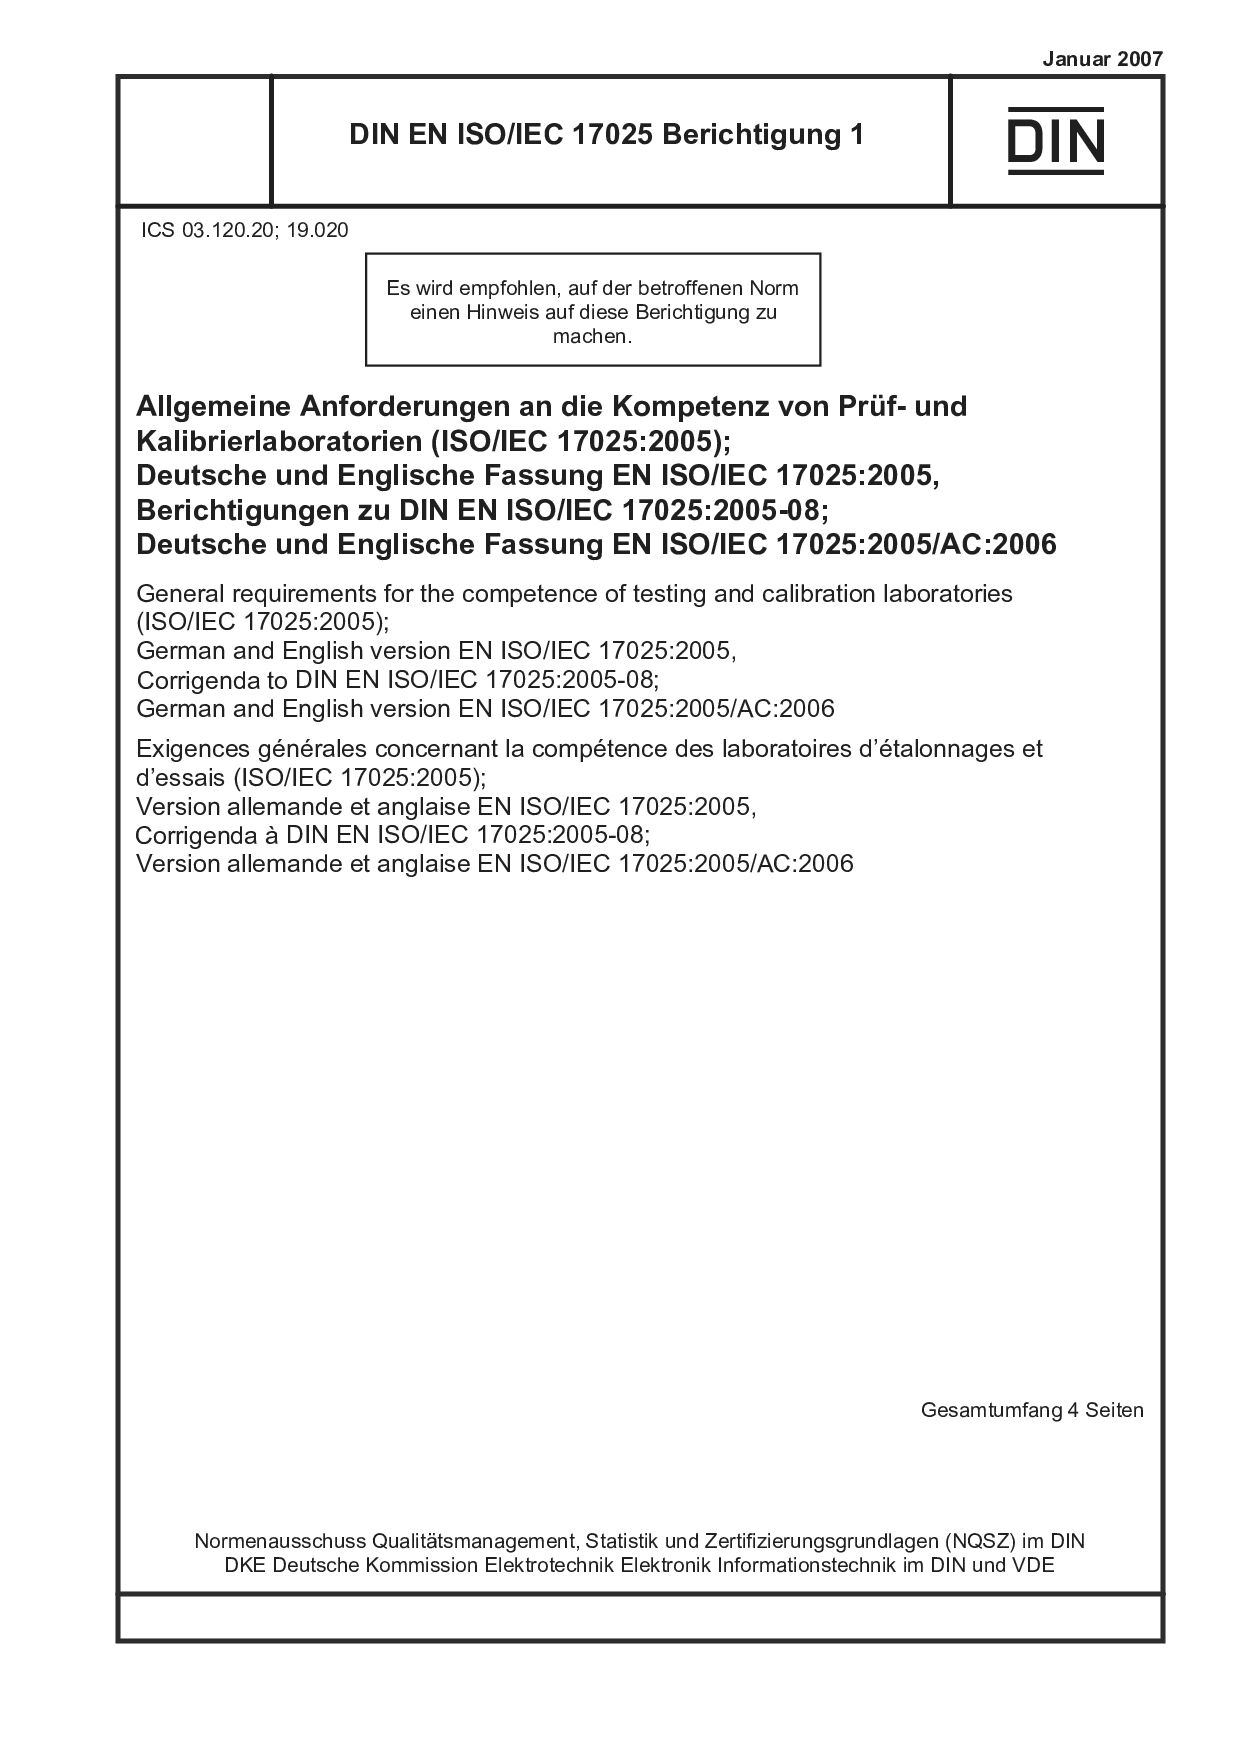 DIN EN ISO/IEC 17025 Berichtigung 1:2007